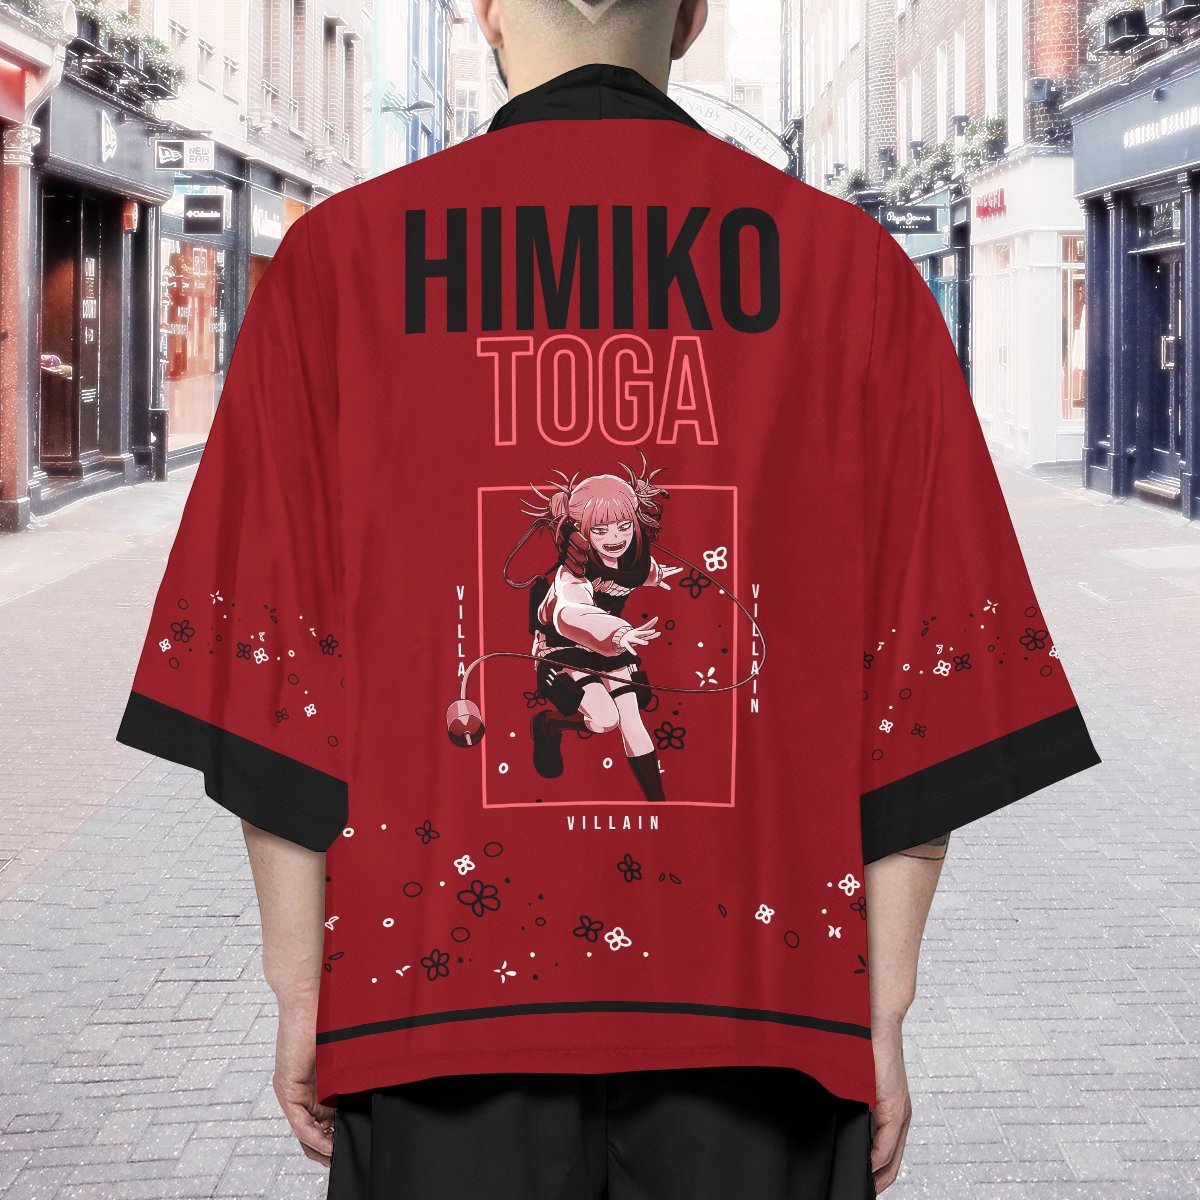 himiko toga kimono 404148 - Anime Kimono